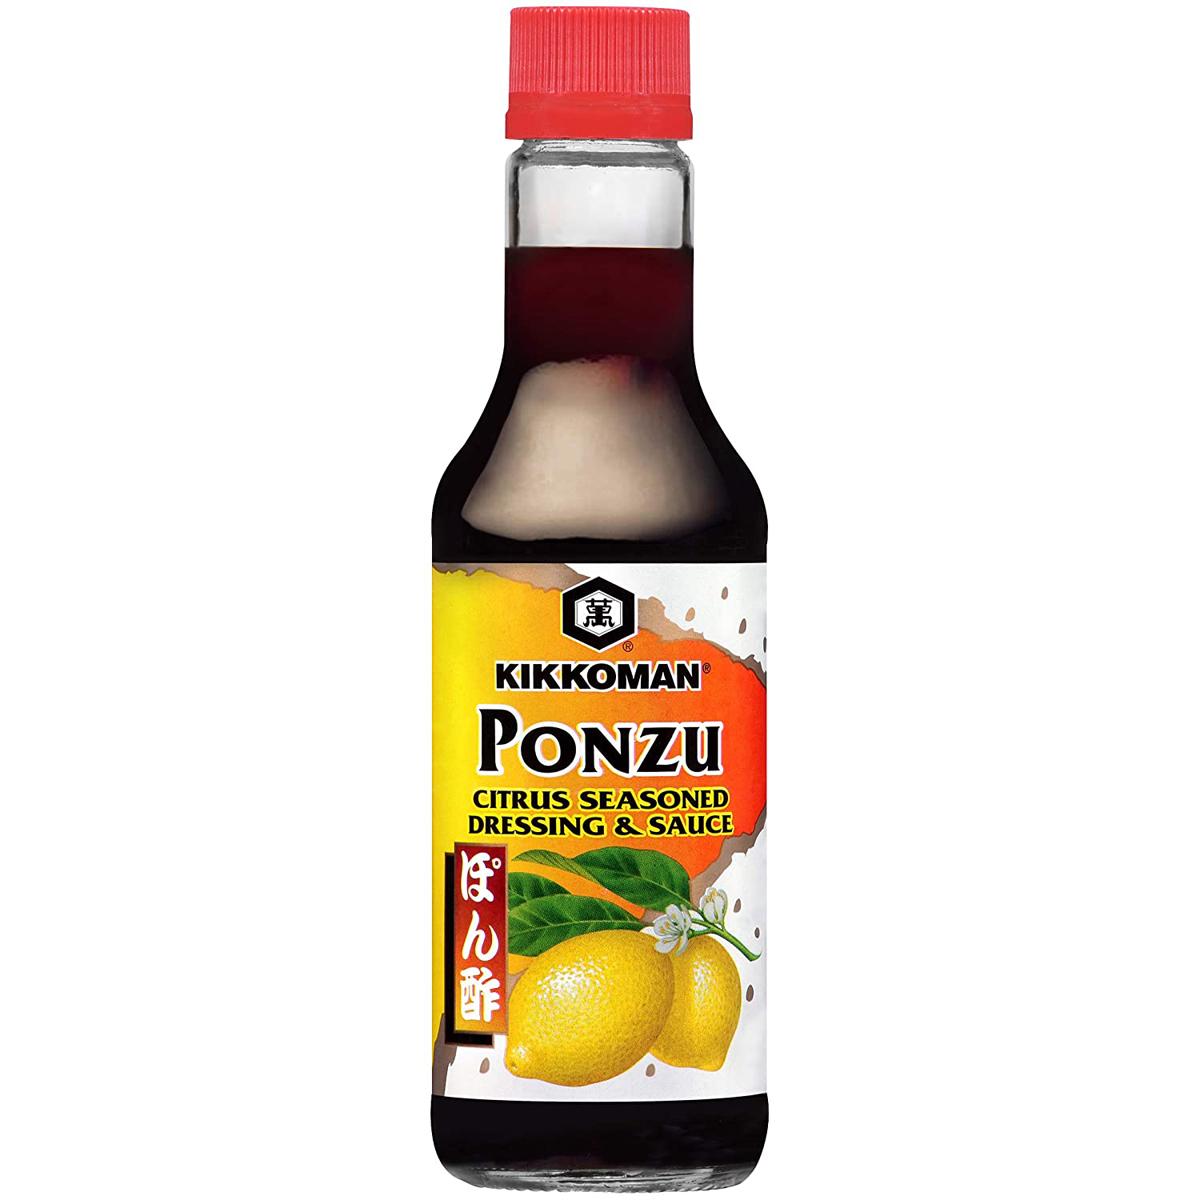 10oz Kikkoman Ponzu Citrus Soy Sauce for $1.94 Shipped